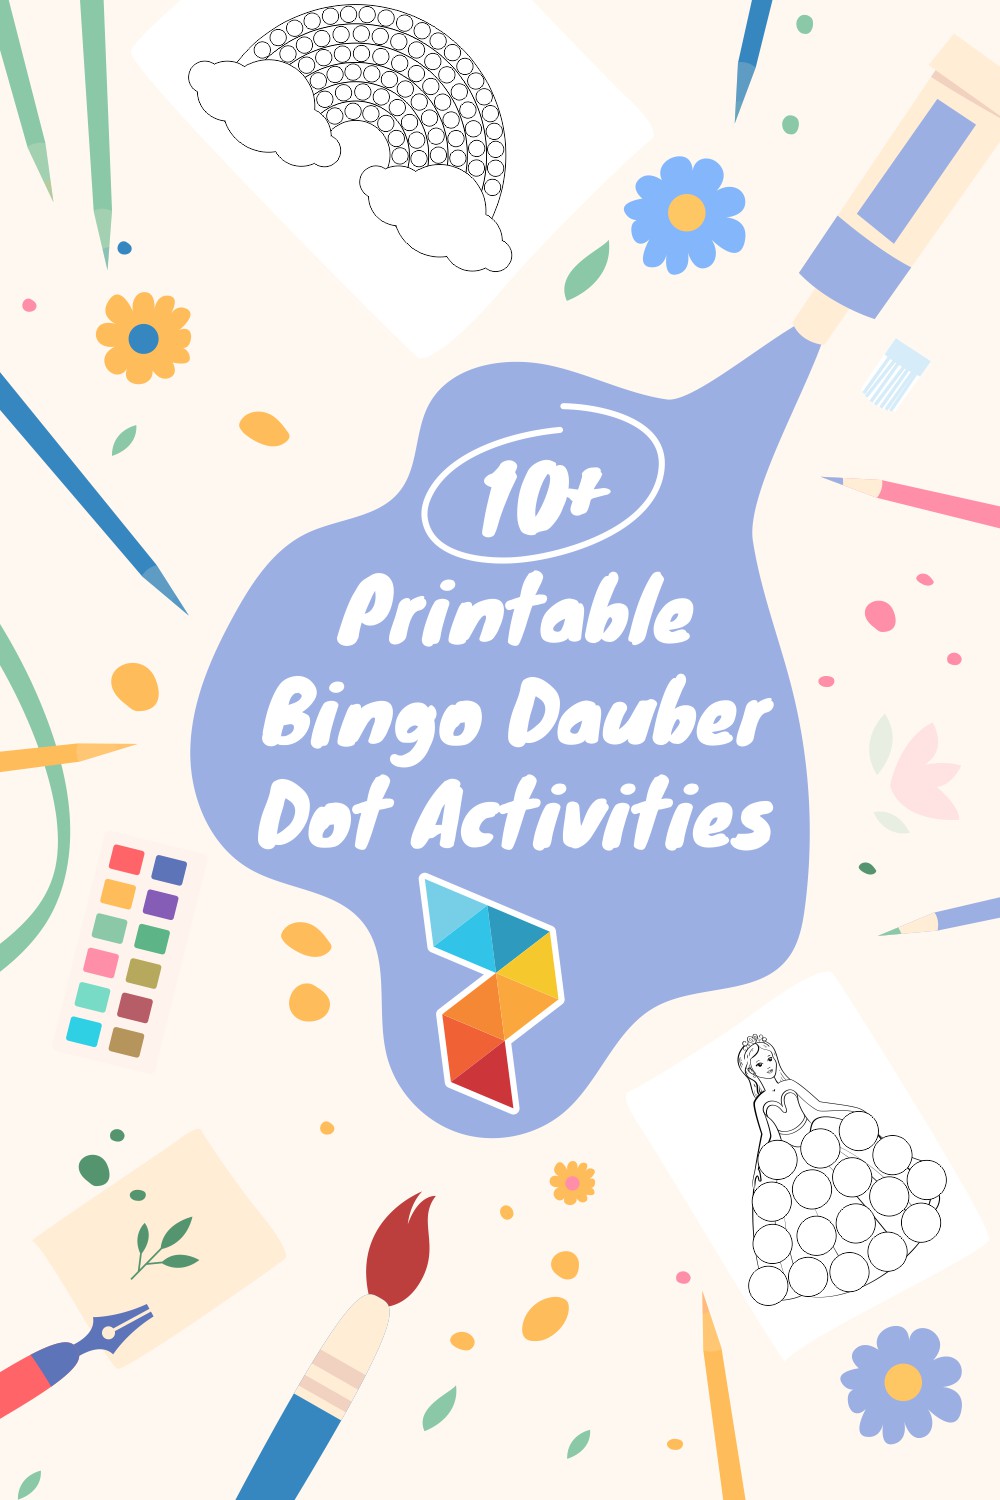 Bingo Dauber Dot Activities